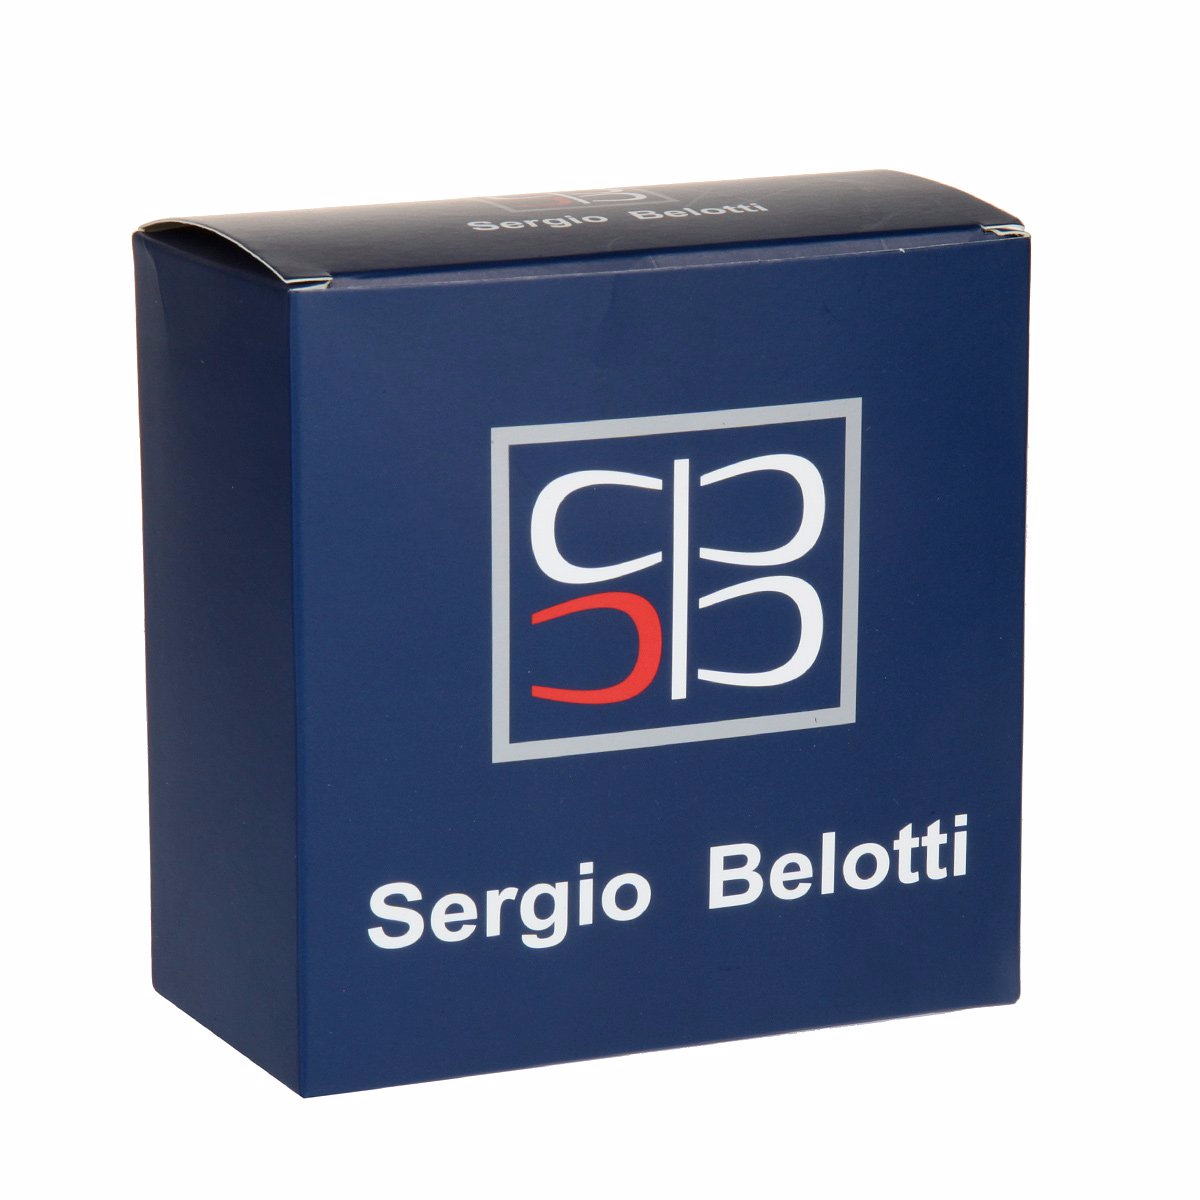 Ремень
Sergio Belotti
2041/40 Nero Ремни и пояса